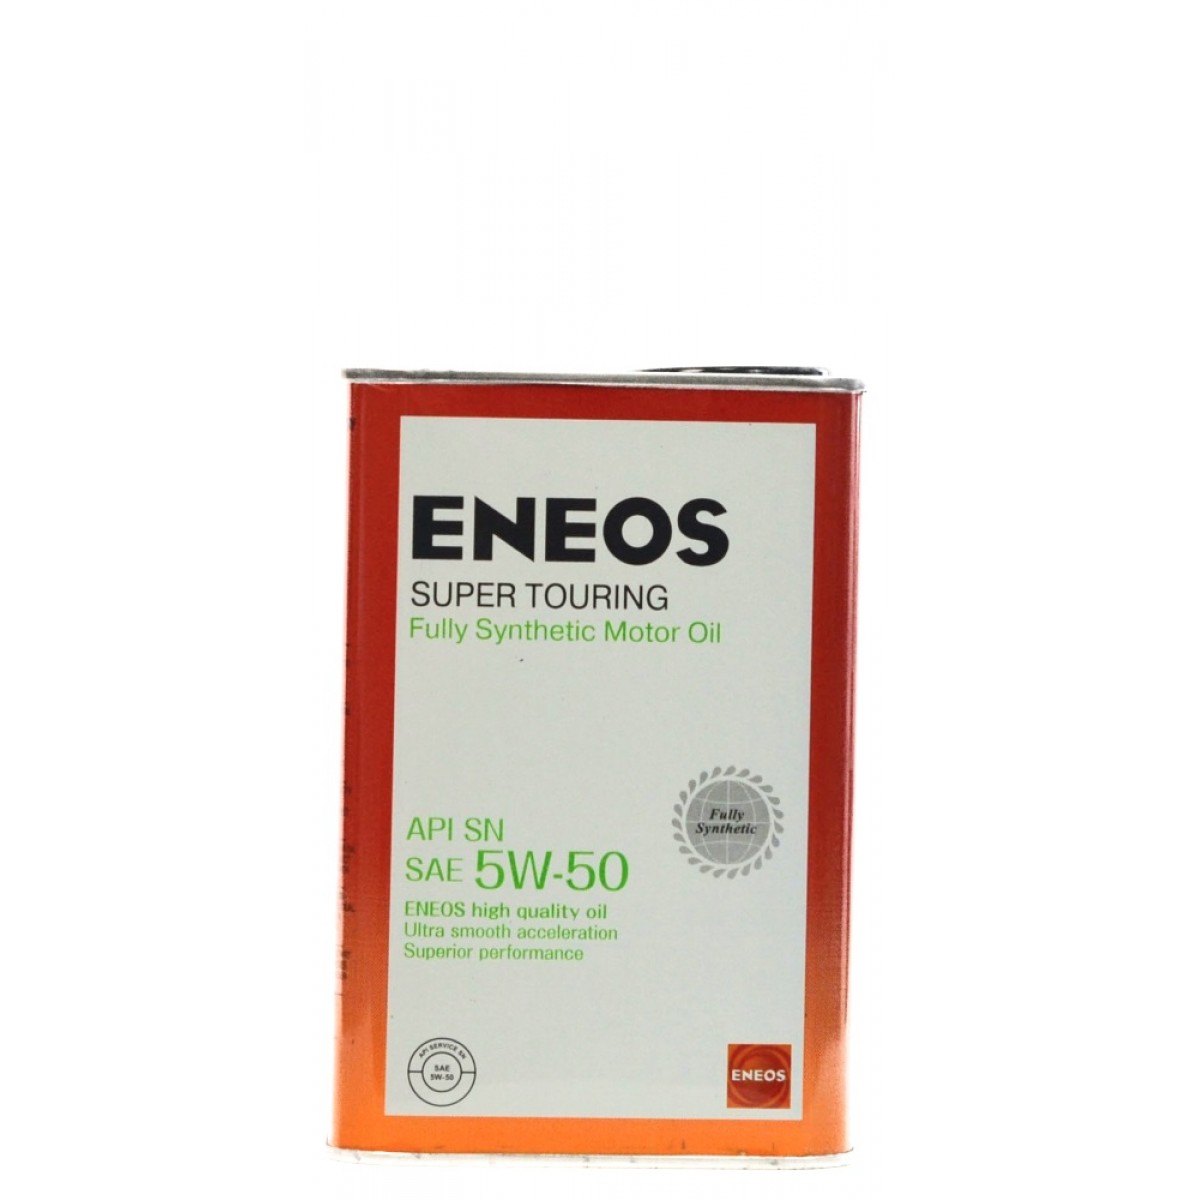 Eneos premium touring 5w30. ENEOS Premium Touring SN 5w30 4л. ENEOS super Touring 100% Synt. SN 5w-50 4л. ENEOS Premium 5w-30.